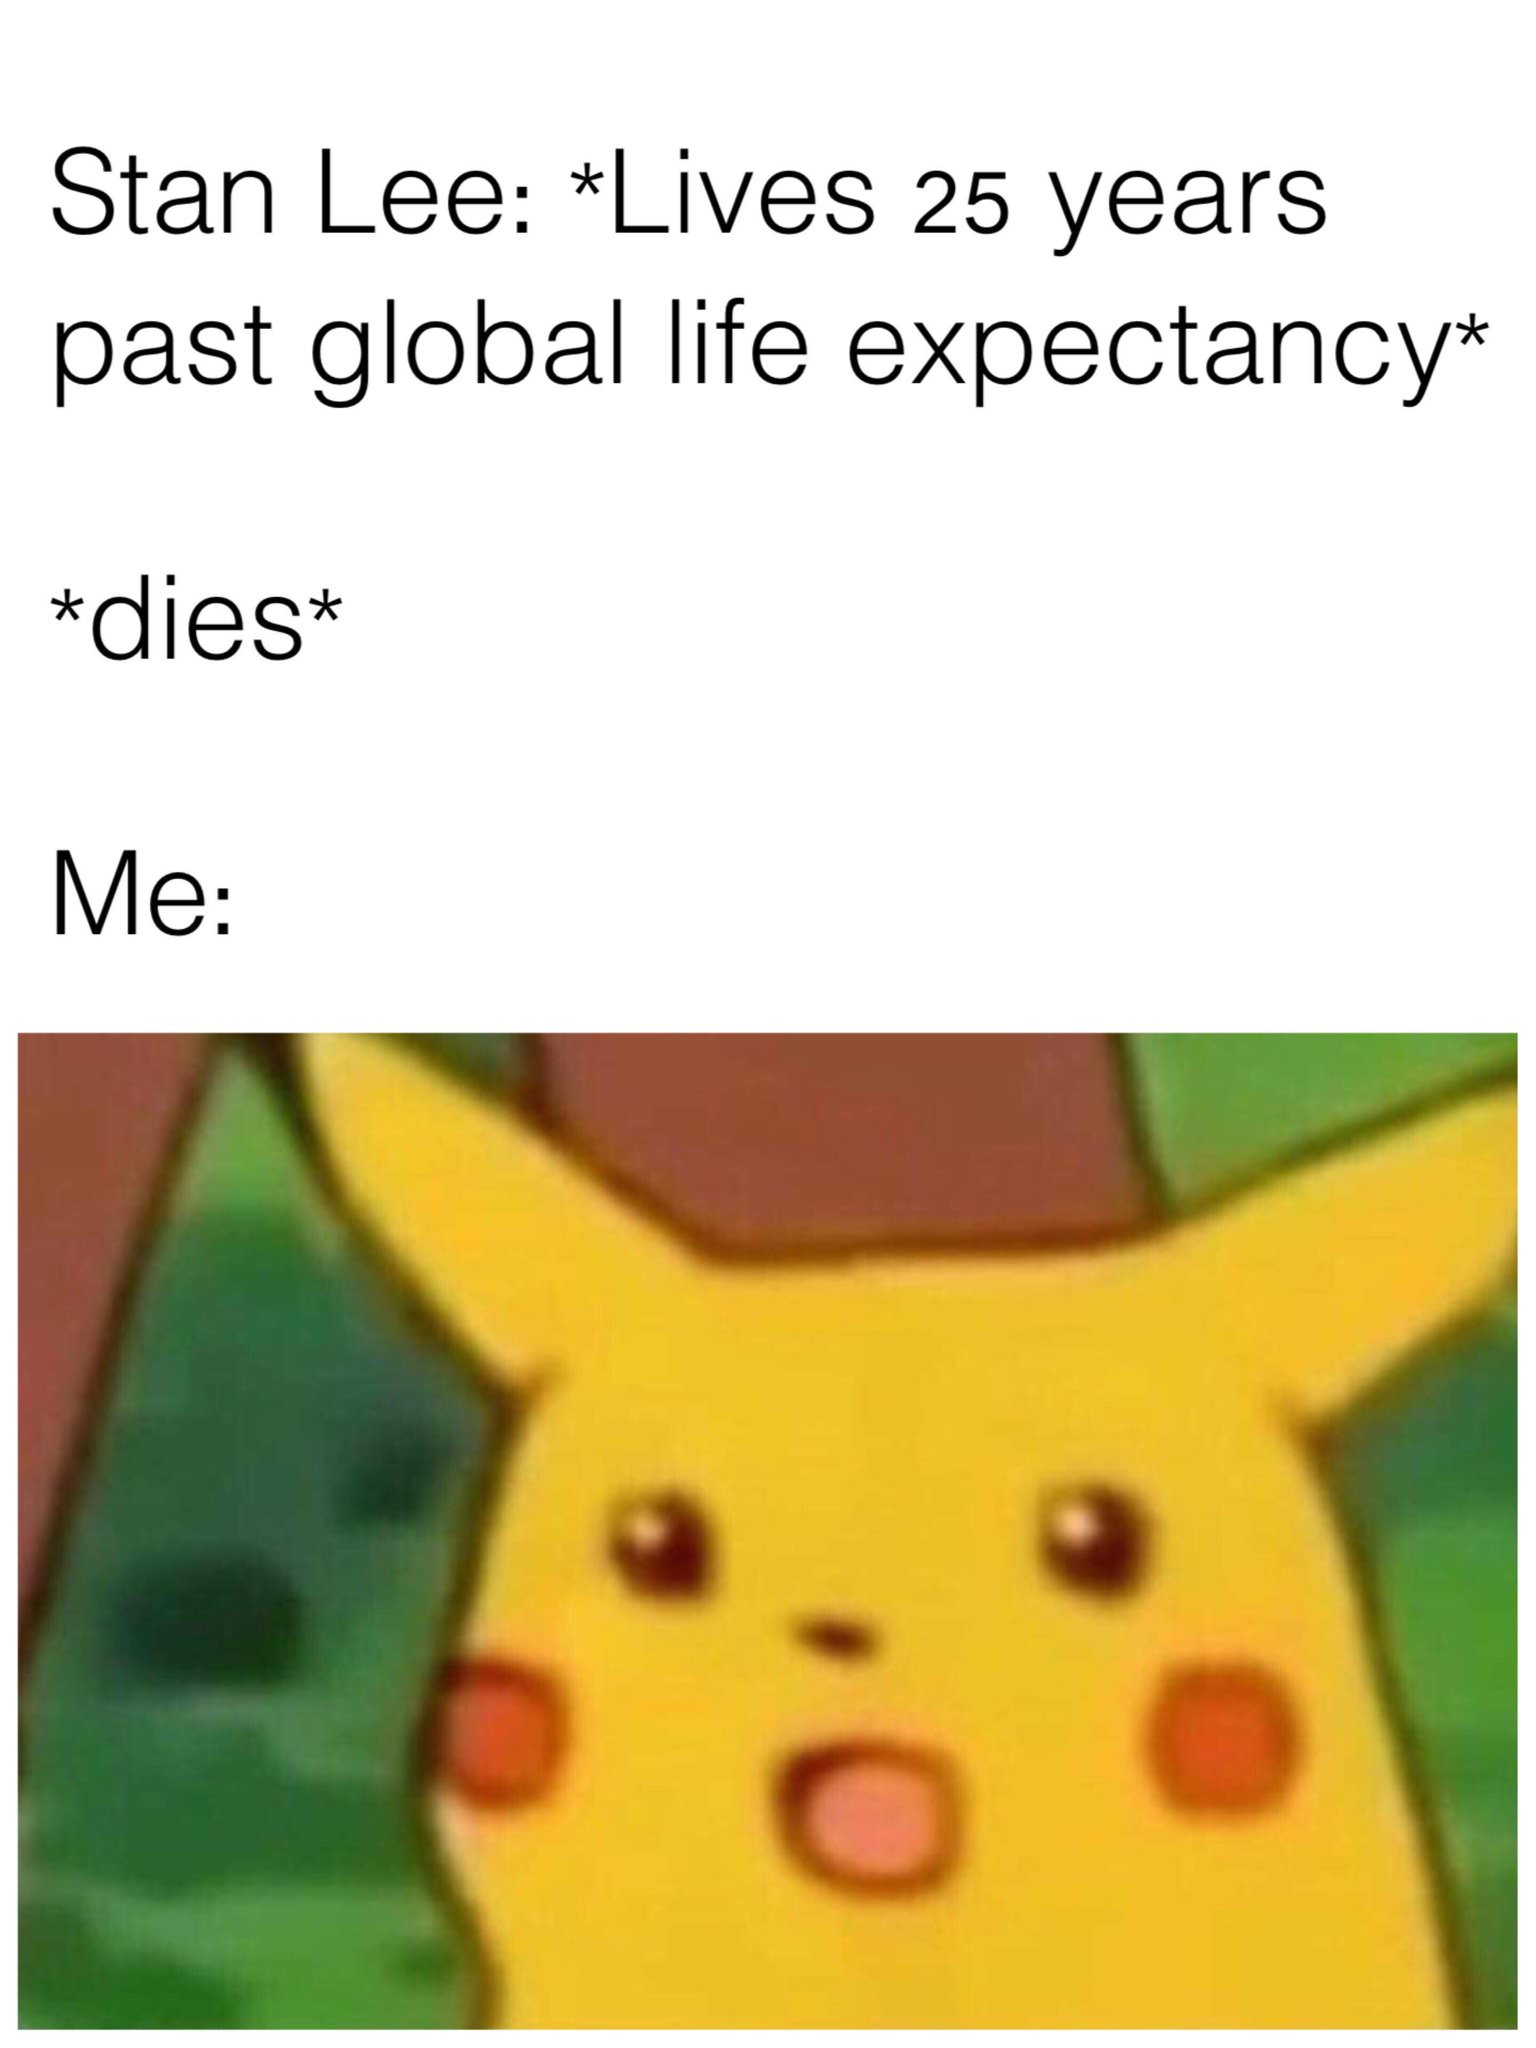 surprised pikachu meme - Stan Lee Lives 25 years past global life expectancy dies Me